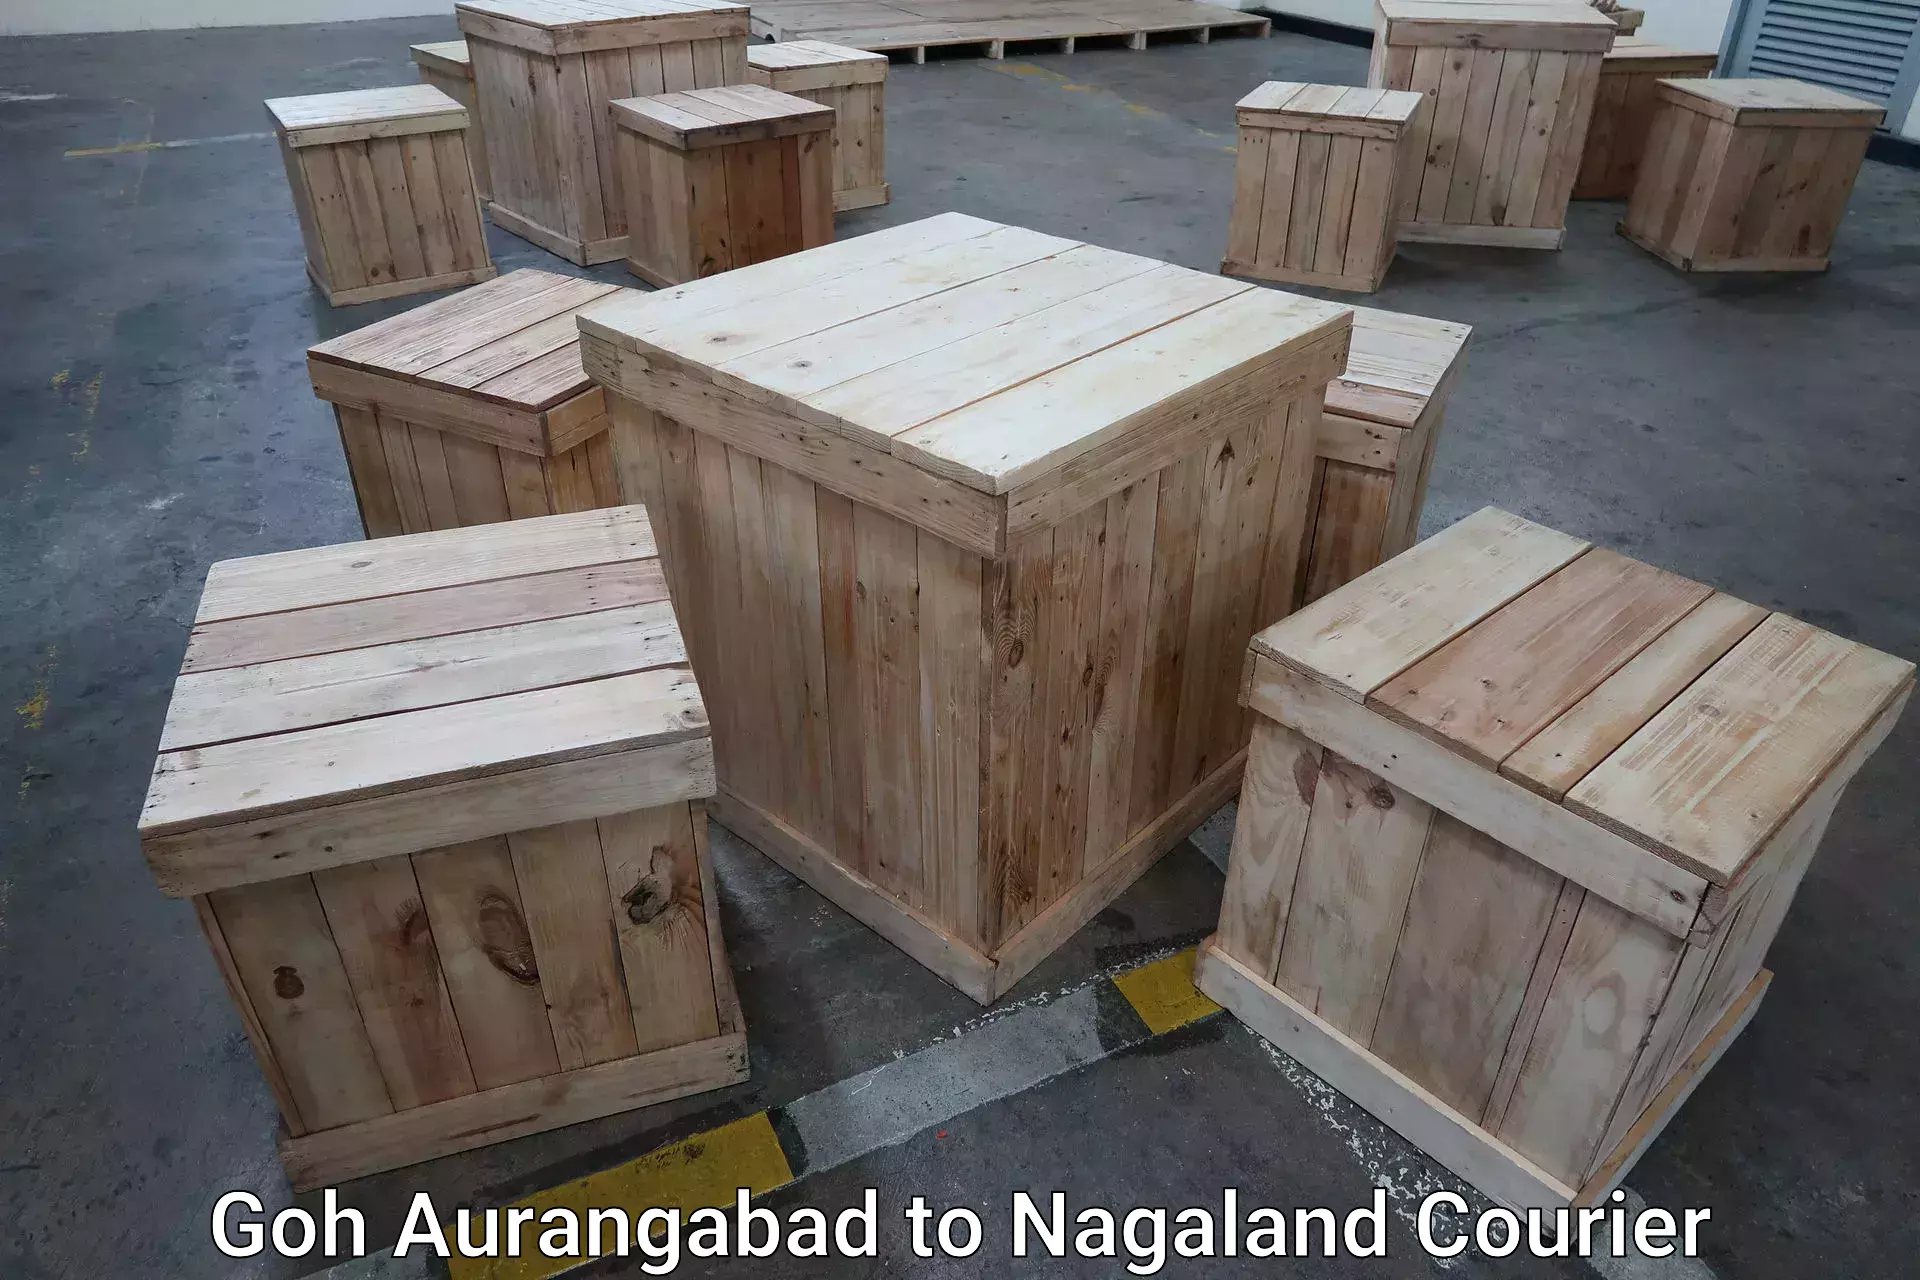 Luggage delivery app Goh Aurangabad to Nagaland